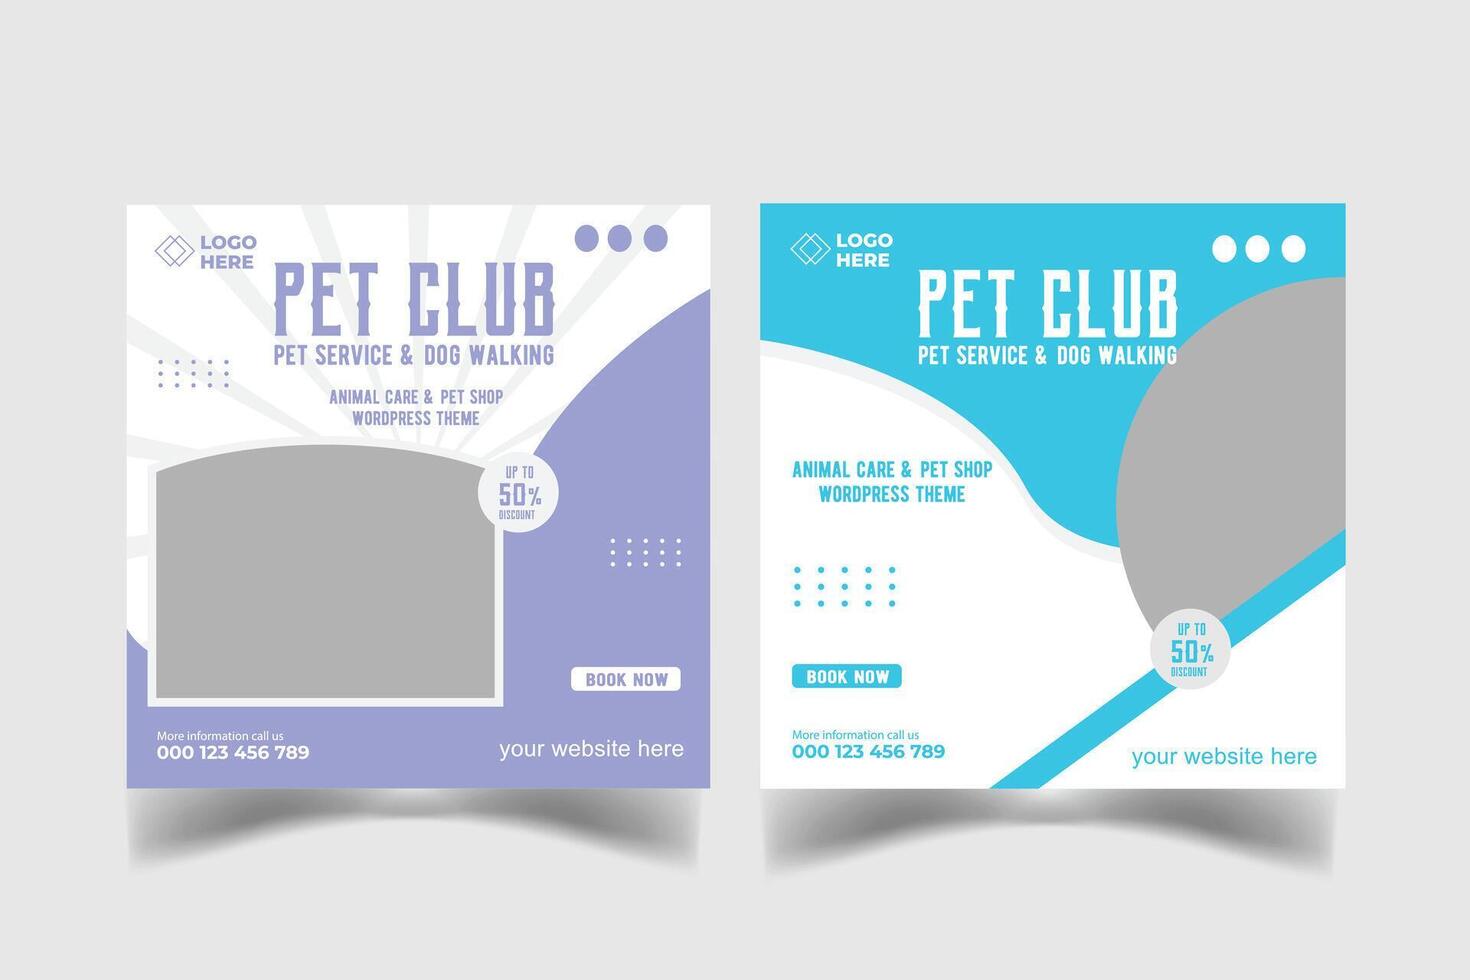 PET CLUB SOCIAL MEDIA DESIGN vector